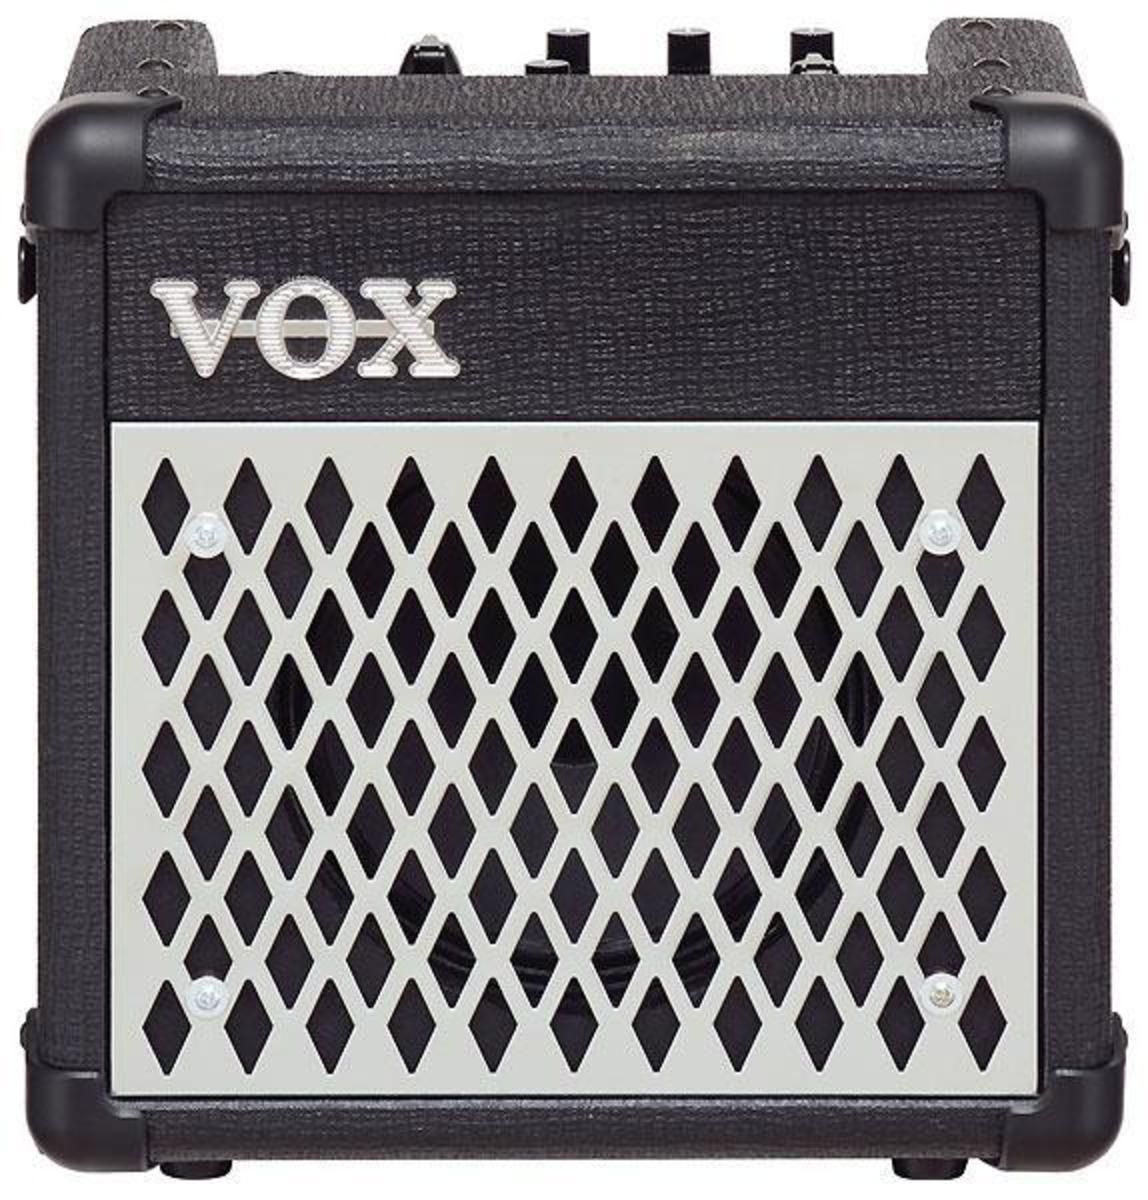 Vox Vox DA5 Guitare Amplificateur 11 Différents Son Styles Effets Noir Très Bonne 